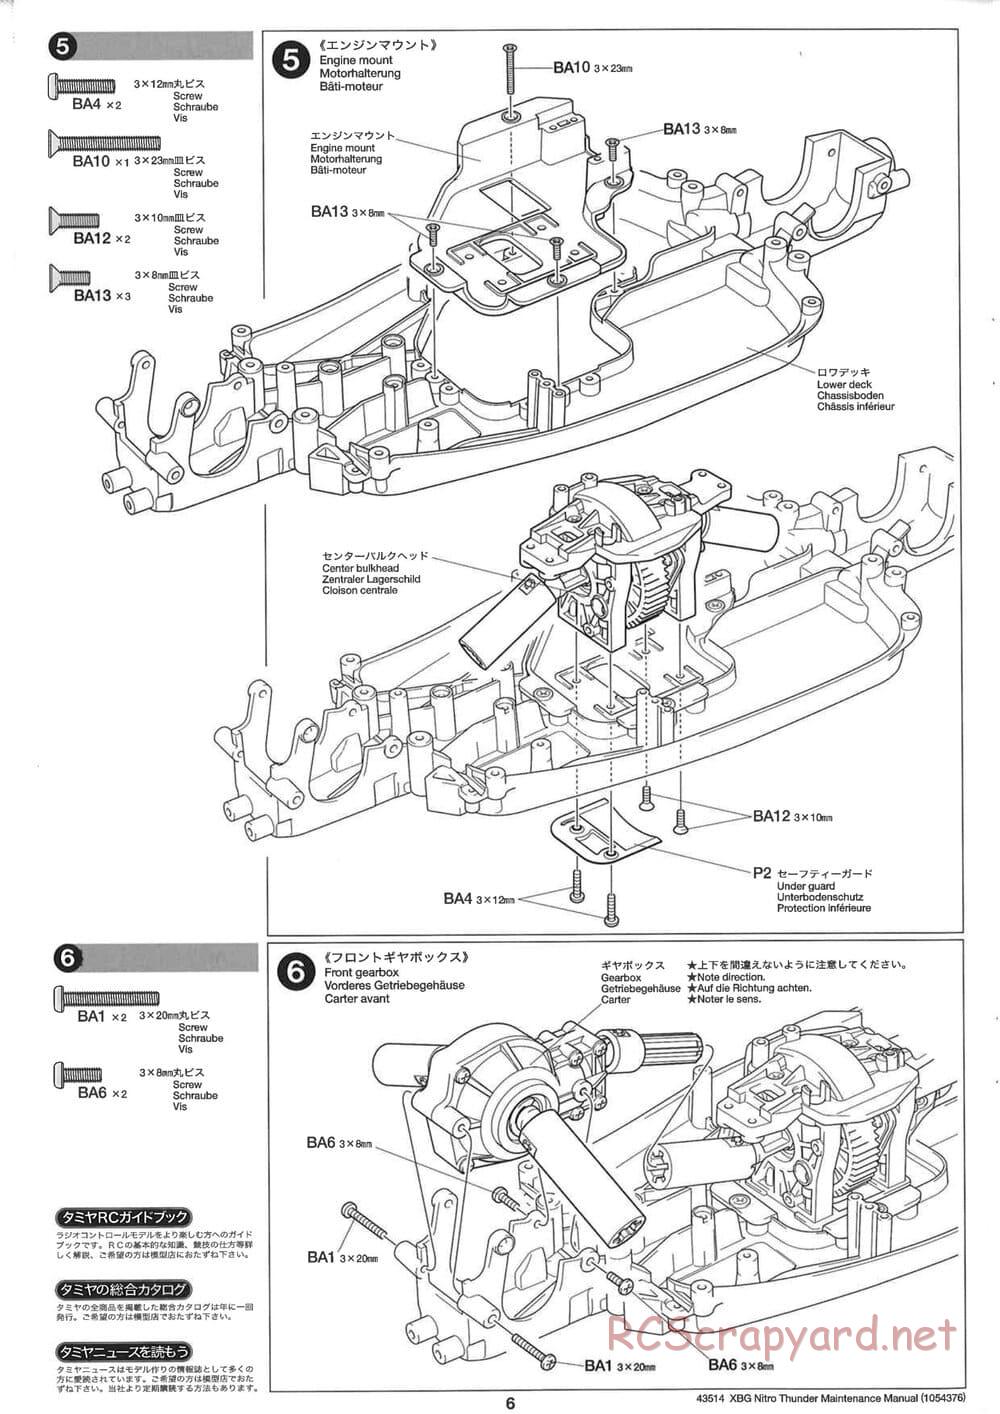 Tamiya - Nitro Thunder - NDF-01 Chassis - Manual - Page 6